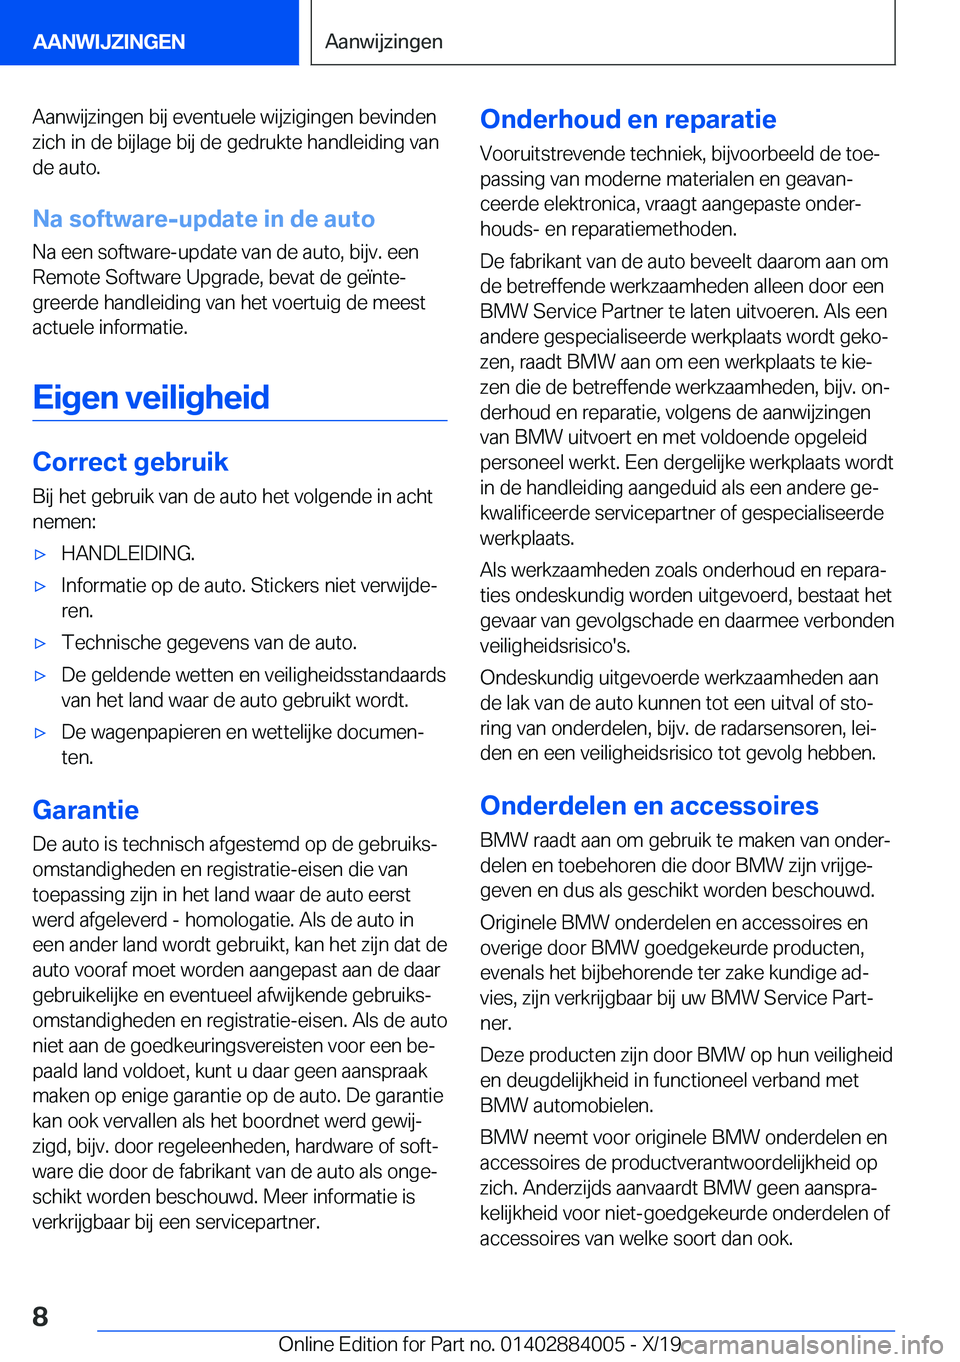 BMW X7 2020  Instructieboekjes (in Dutch) �A�a�n�w�i�j�z�i�n�g�e�n��b�i�j��e�v�e�n�t�u�e�l�e��w�i�j�z�i�g�i�n�g�e�n��b�e�v�i�n�d�e�n�z�i�c�h��i�n��d�e��b�i�j�l�a�g�e��b�i�j��d�e��g�e�d�r�u�k�t�e��h�a�n�d�l�e�i�d�i�n�g��v�a�n
�d�e�